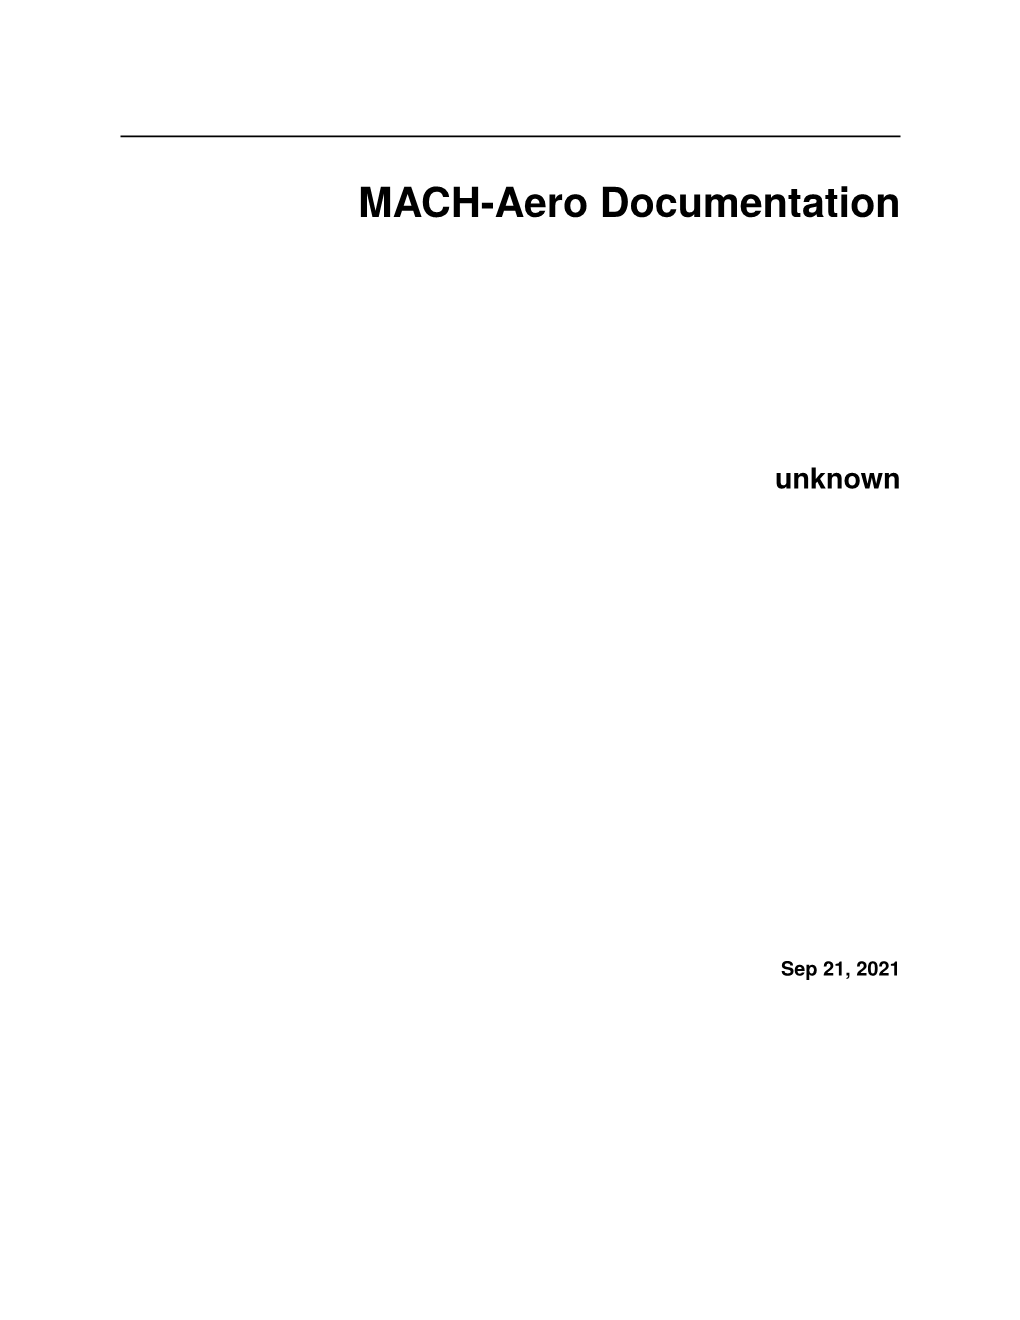 MACH-Aero Documentation Unknown